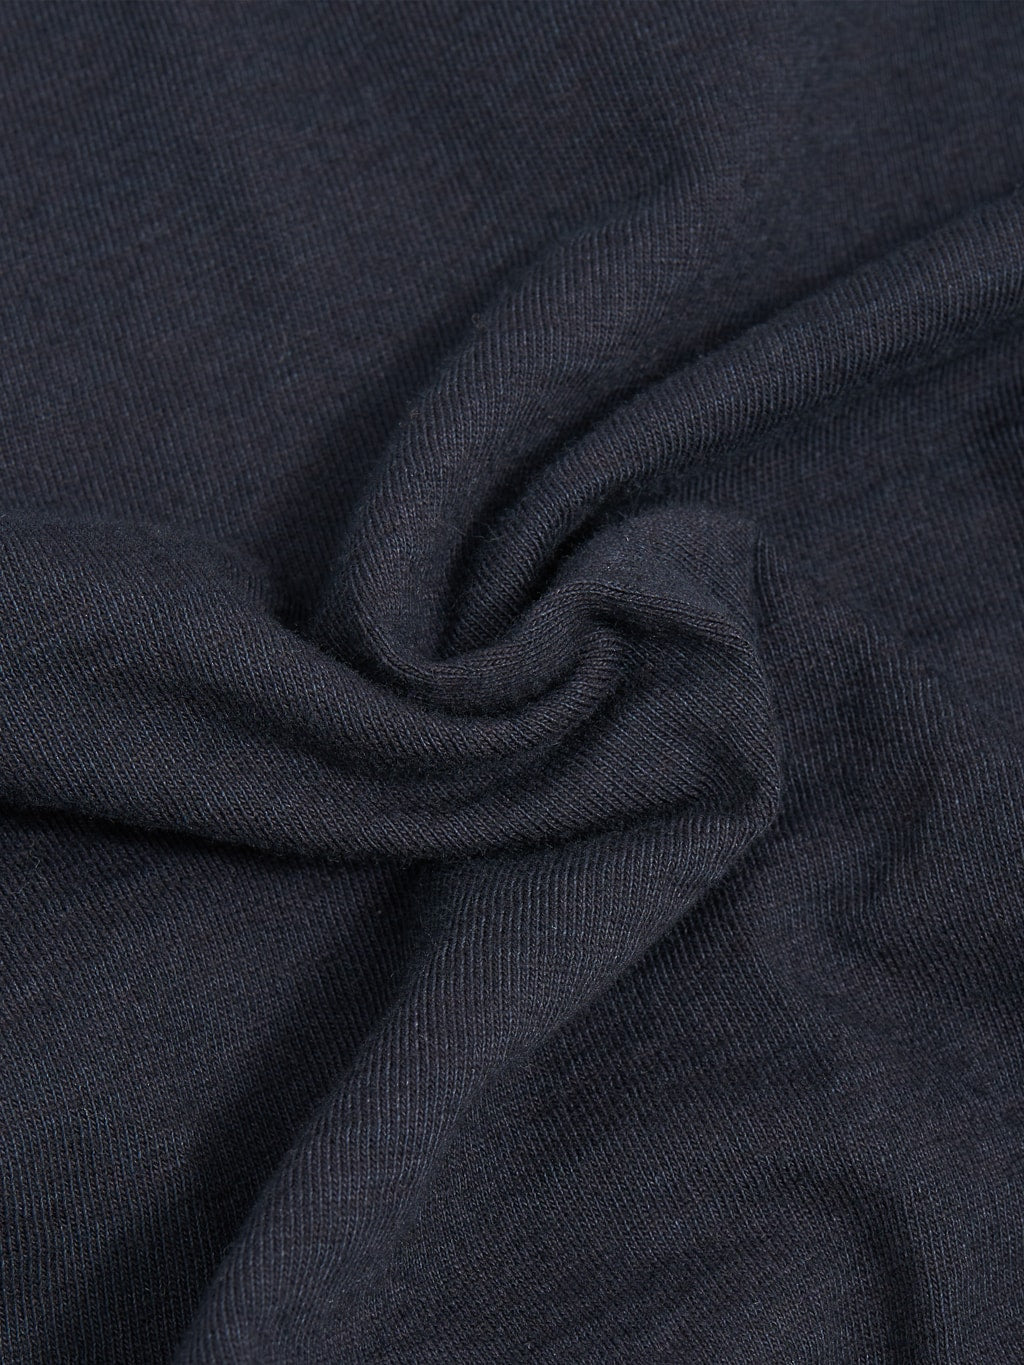 pure blue japan black tshirt cotton fabric